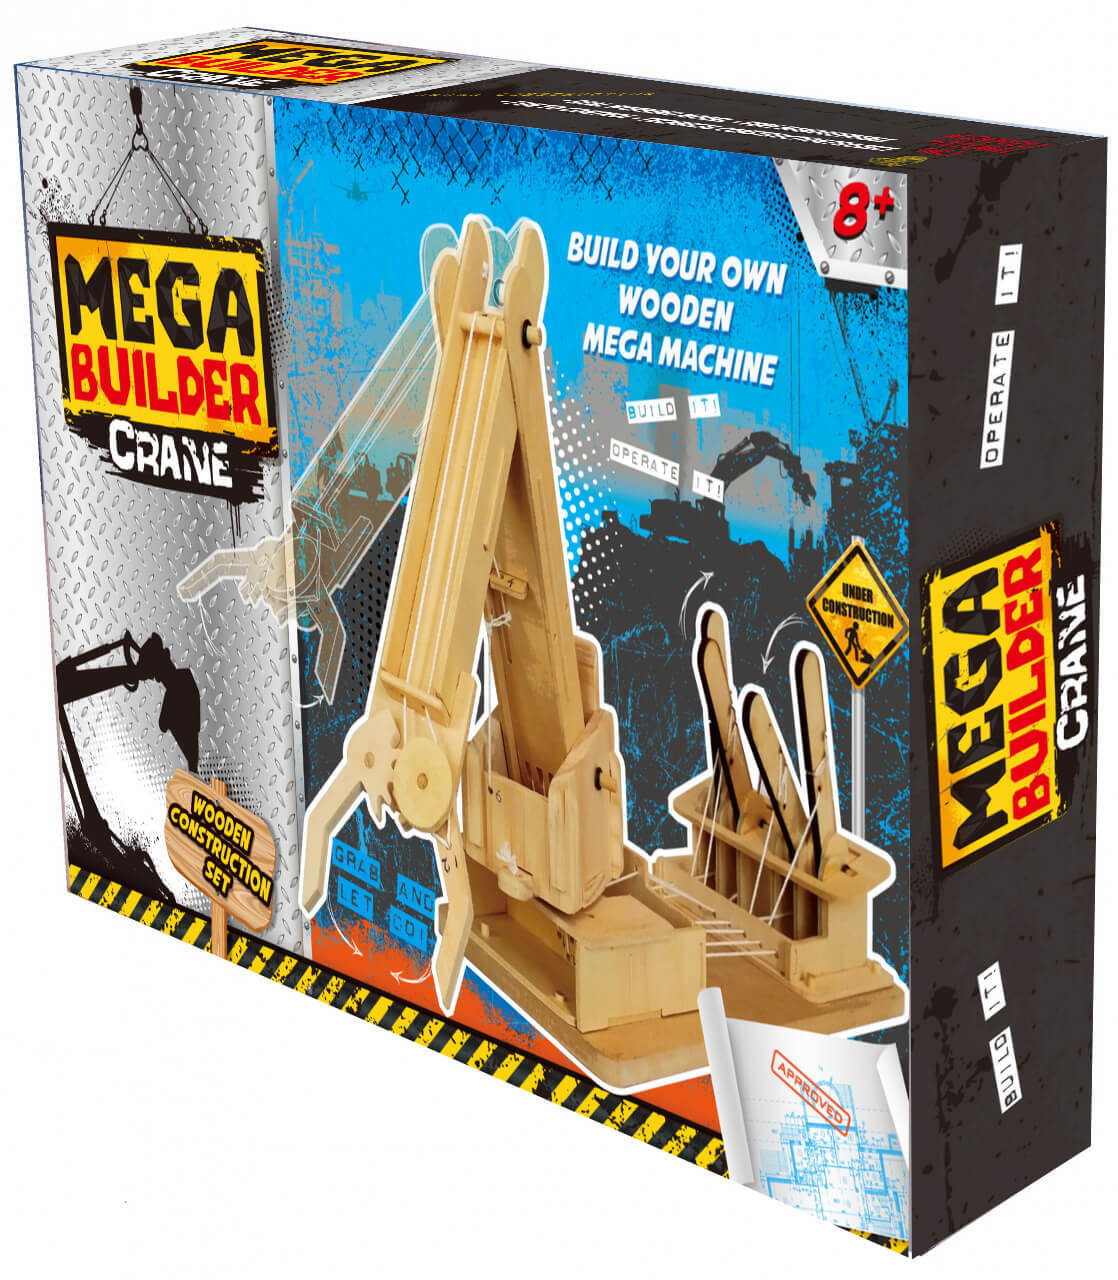 Mega Builder Crane additional image